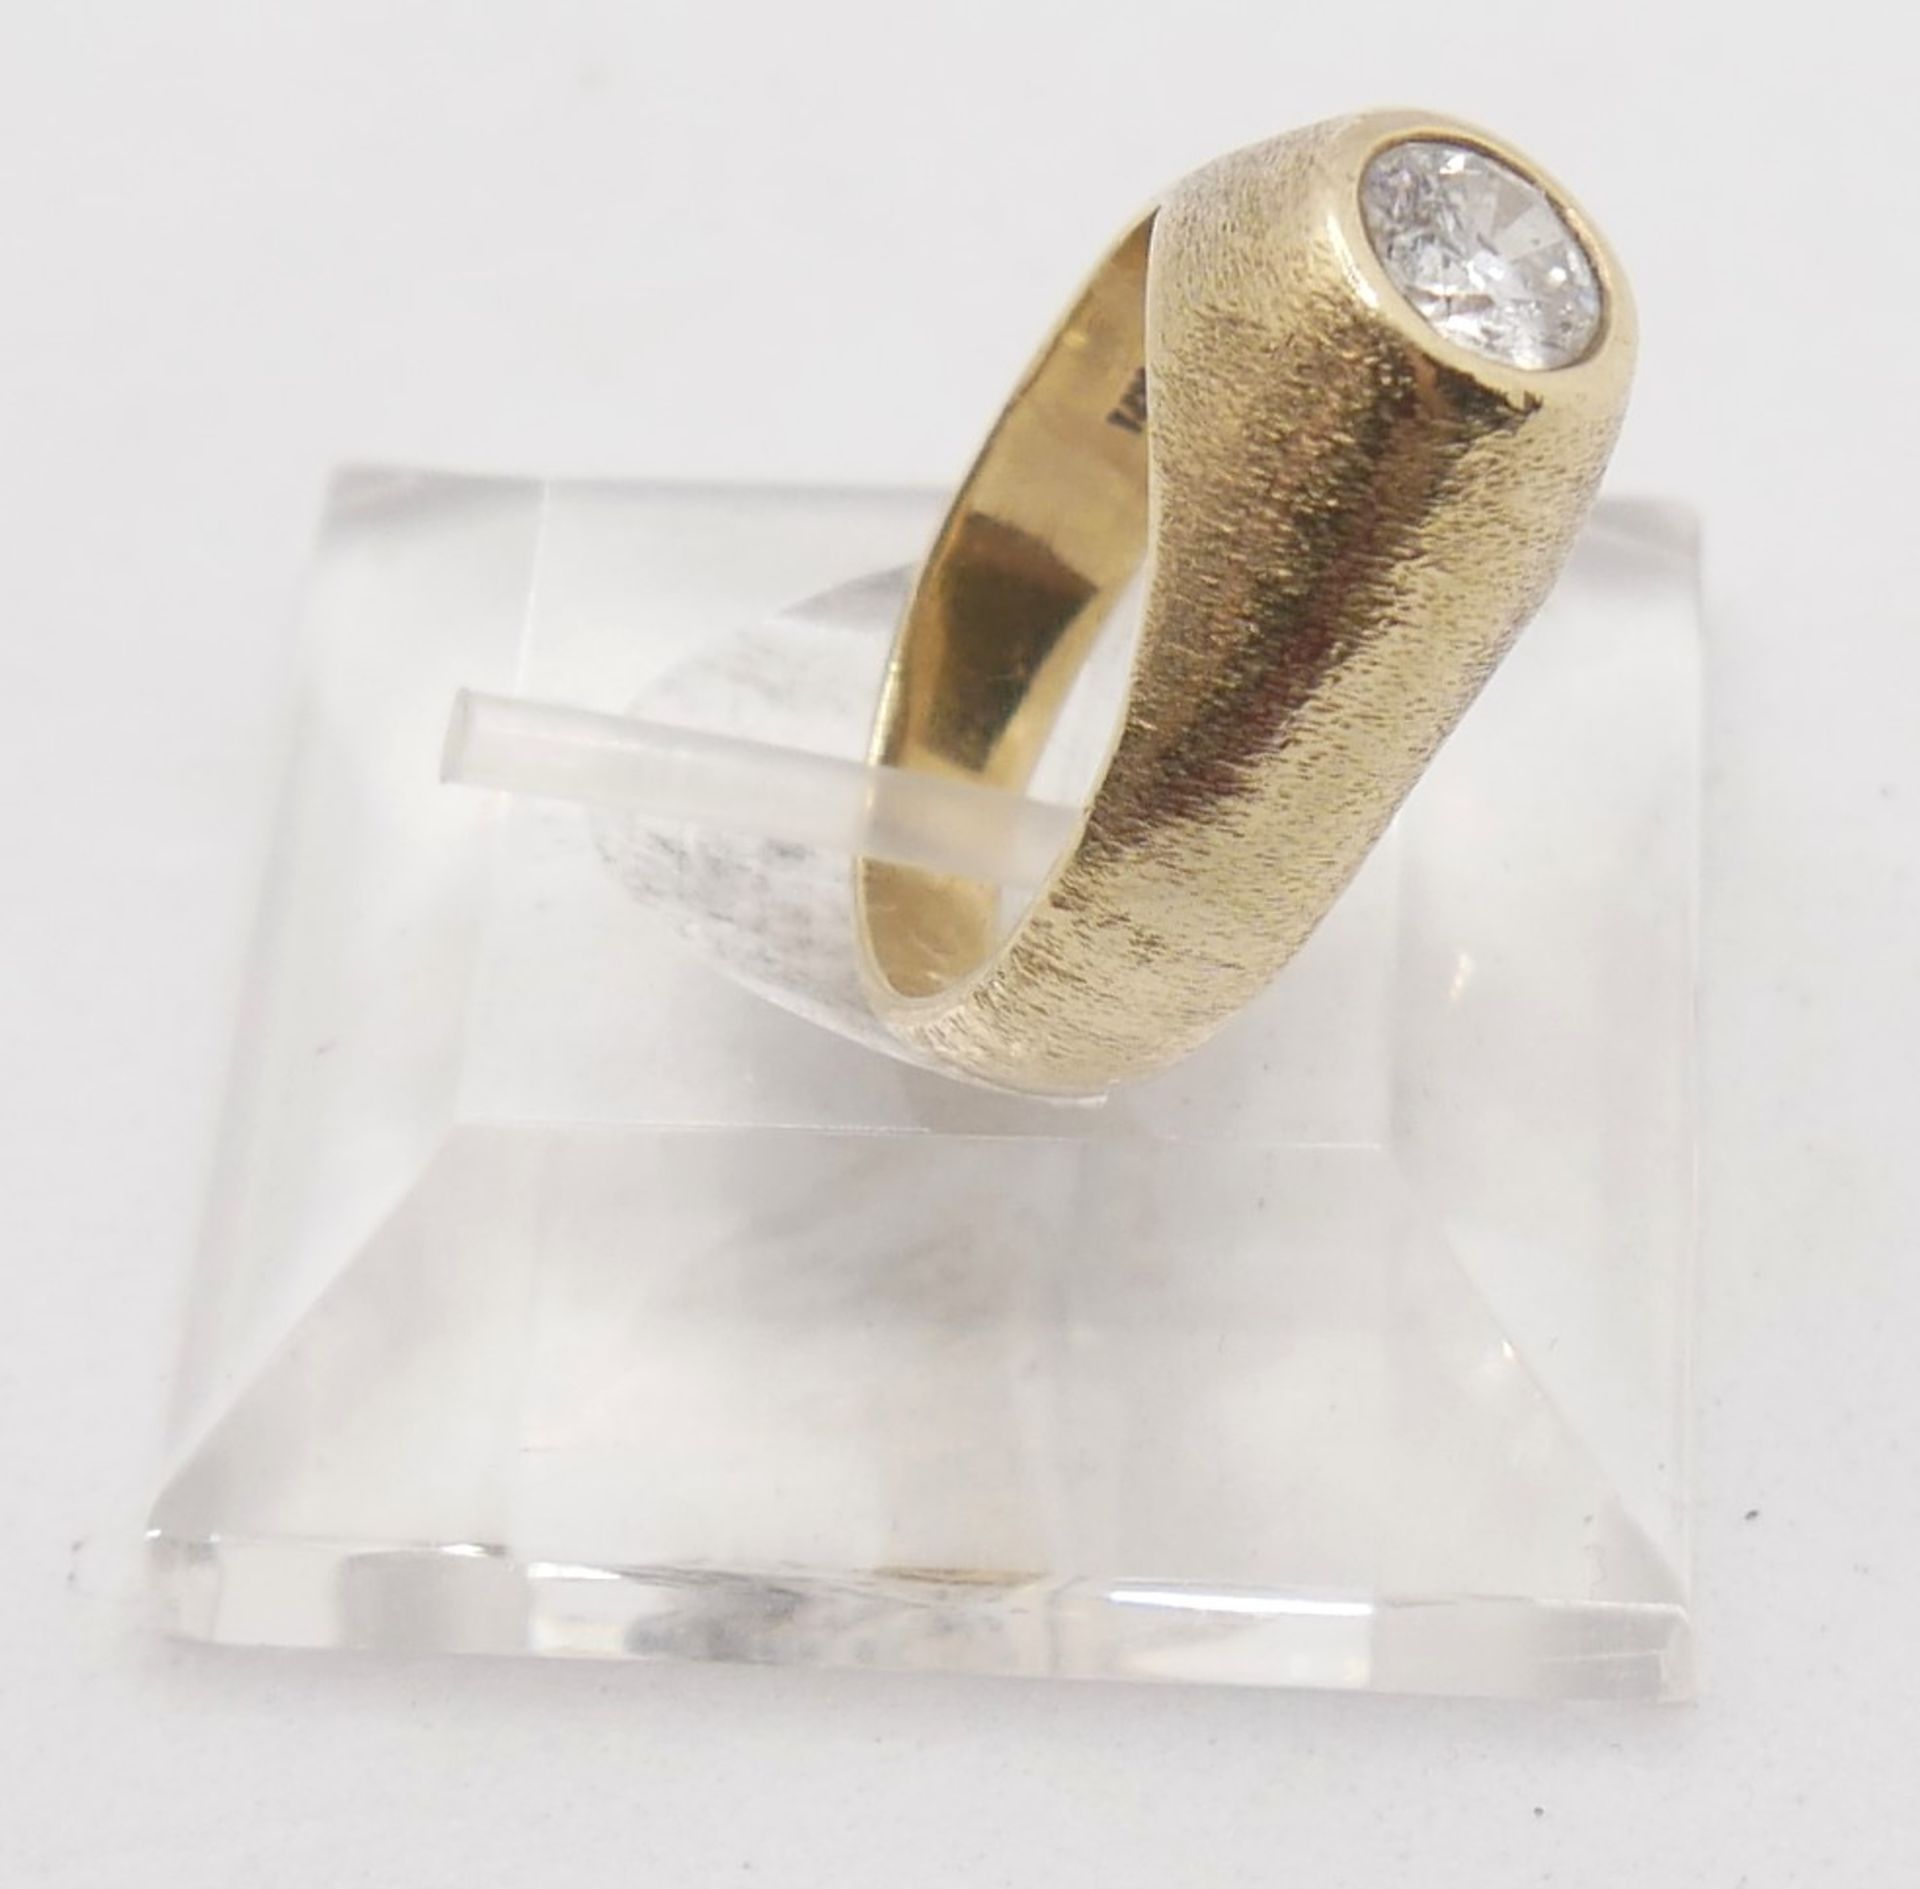 14ct Goldring, mittig besetzt mit 1 Diamant Solitär von ca. 0,6ct, Ringgröße 54, Juweliersarbeit - Bild 2 aus 2